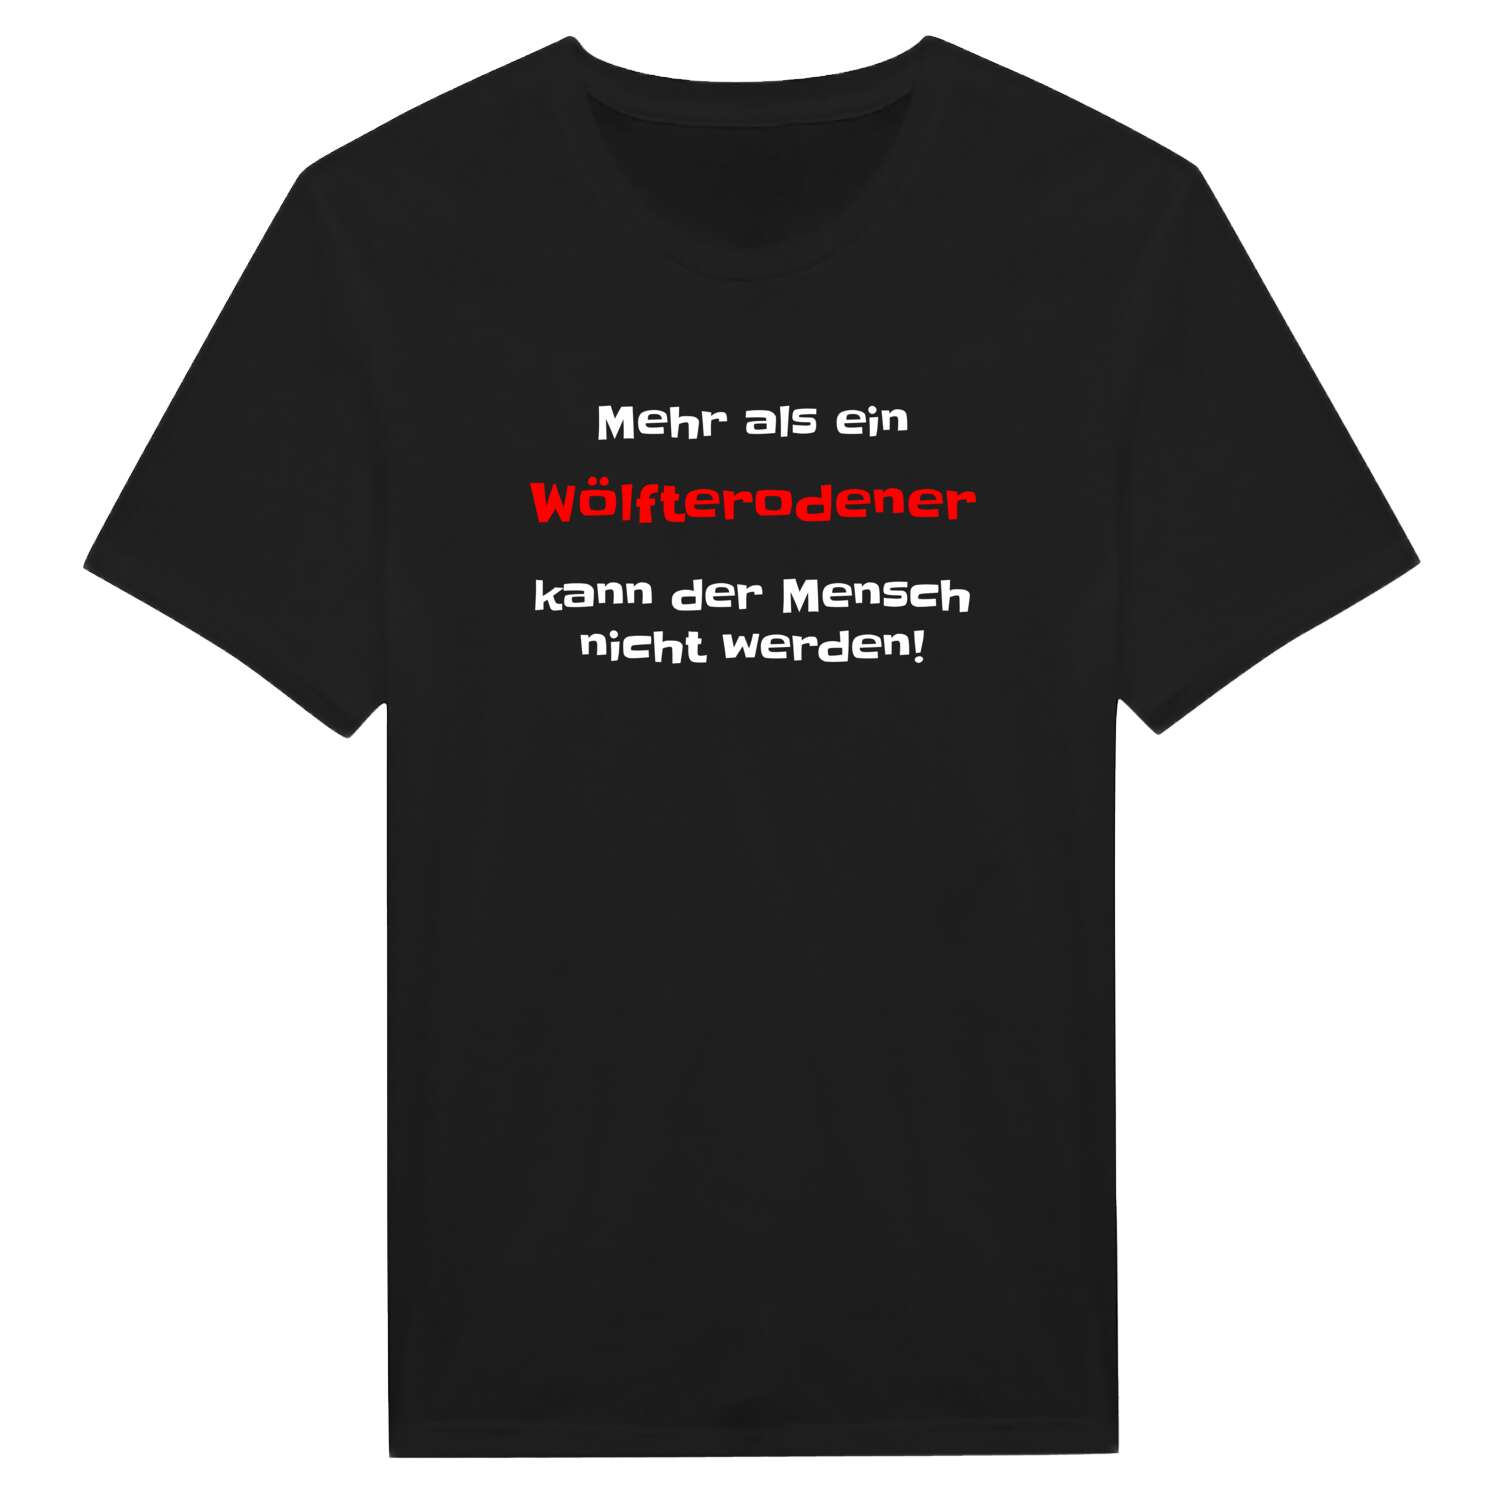 Wölfterode T-Shirt »Mehr als ein«